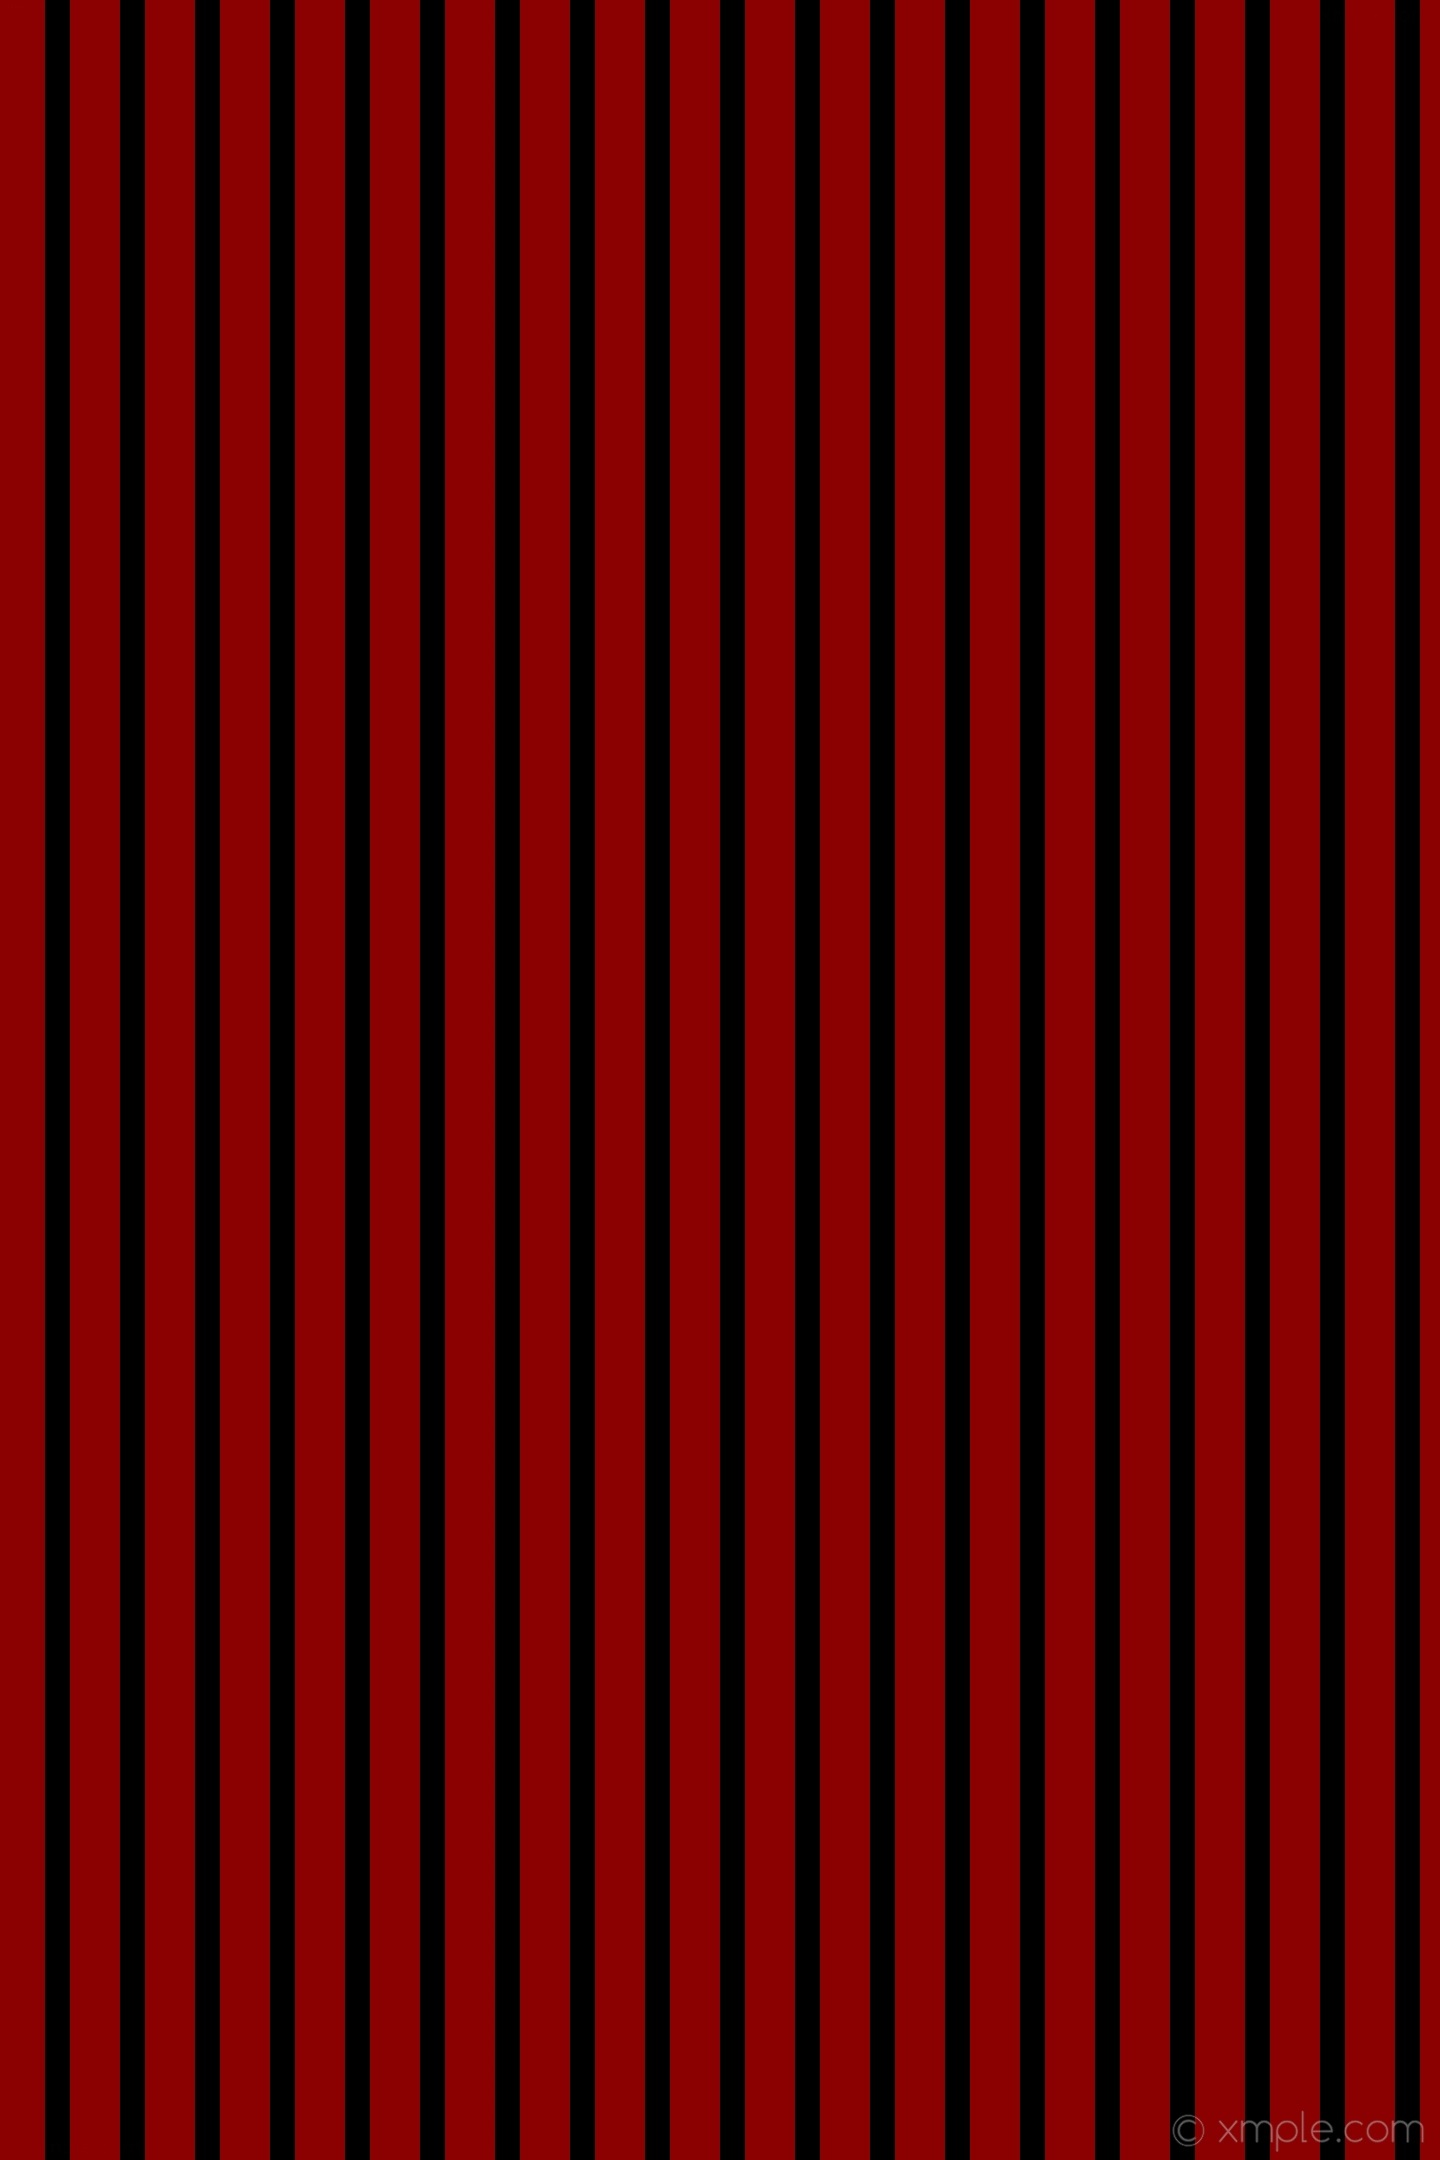 stripes-black-red-lines-streaks-1440×2160-c2-000000-8b0000-l2-25-50-a ...